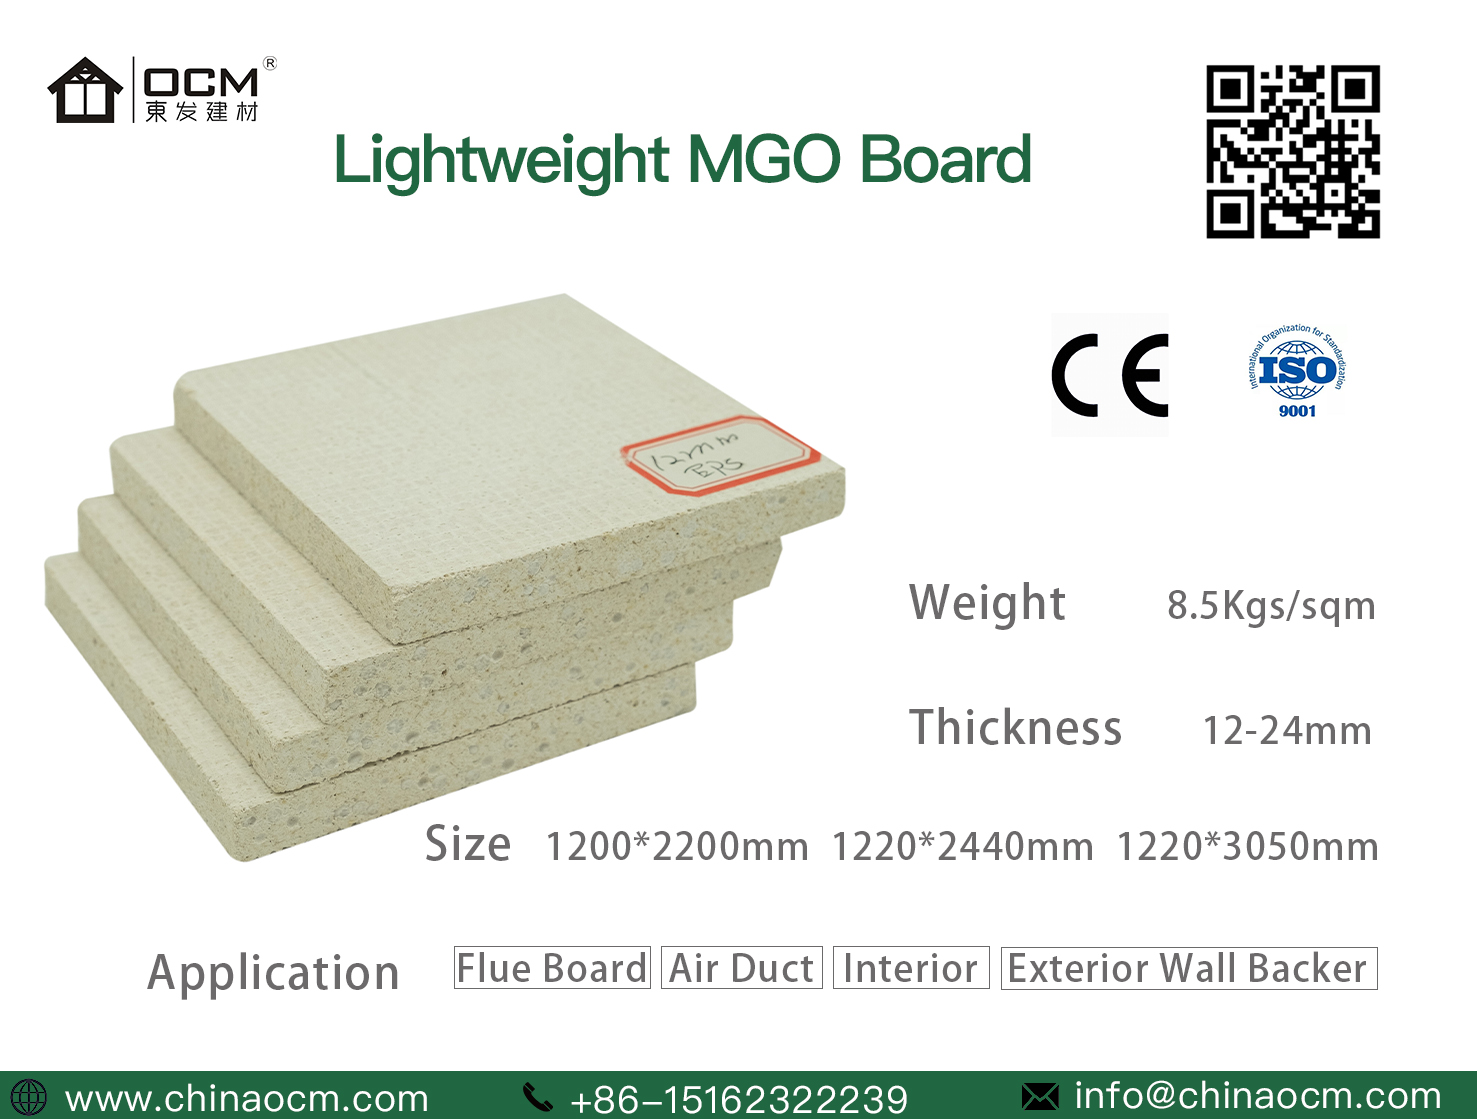 OCM Light Weight Mgo Board 12mm-24mm 